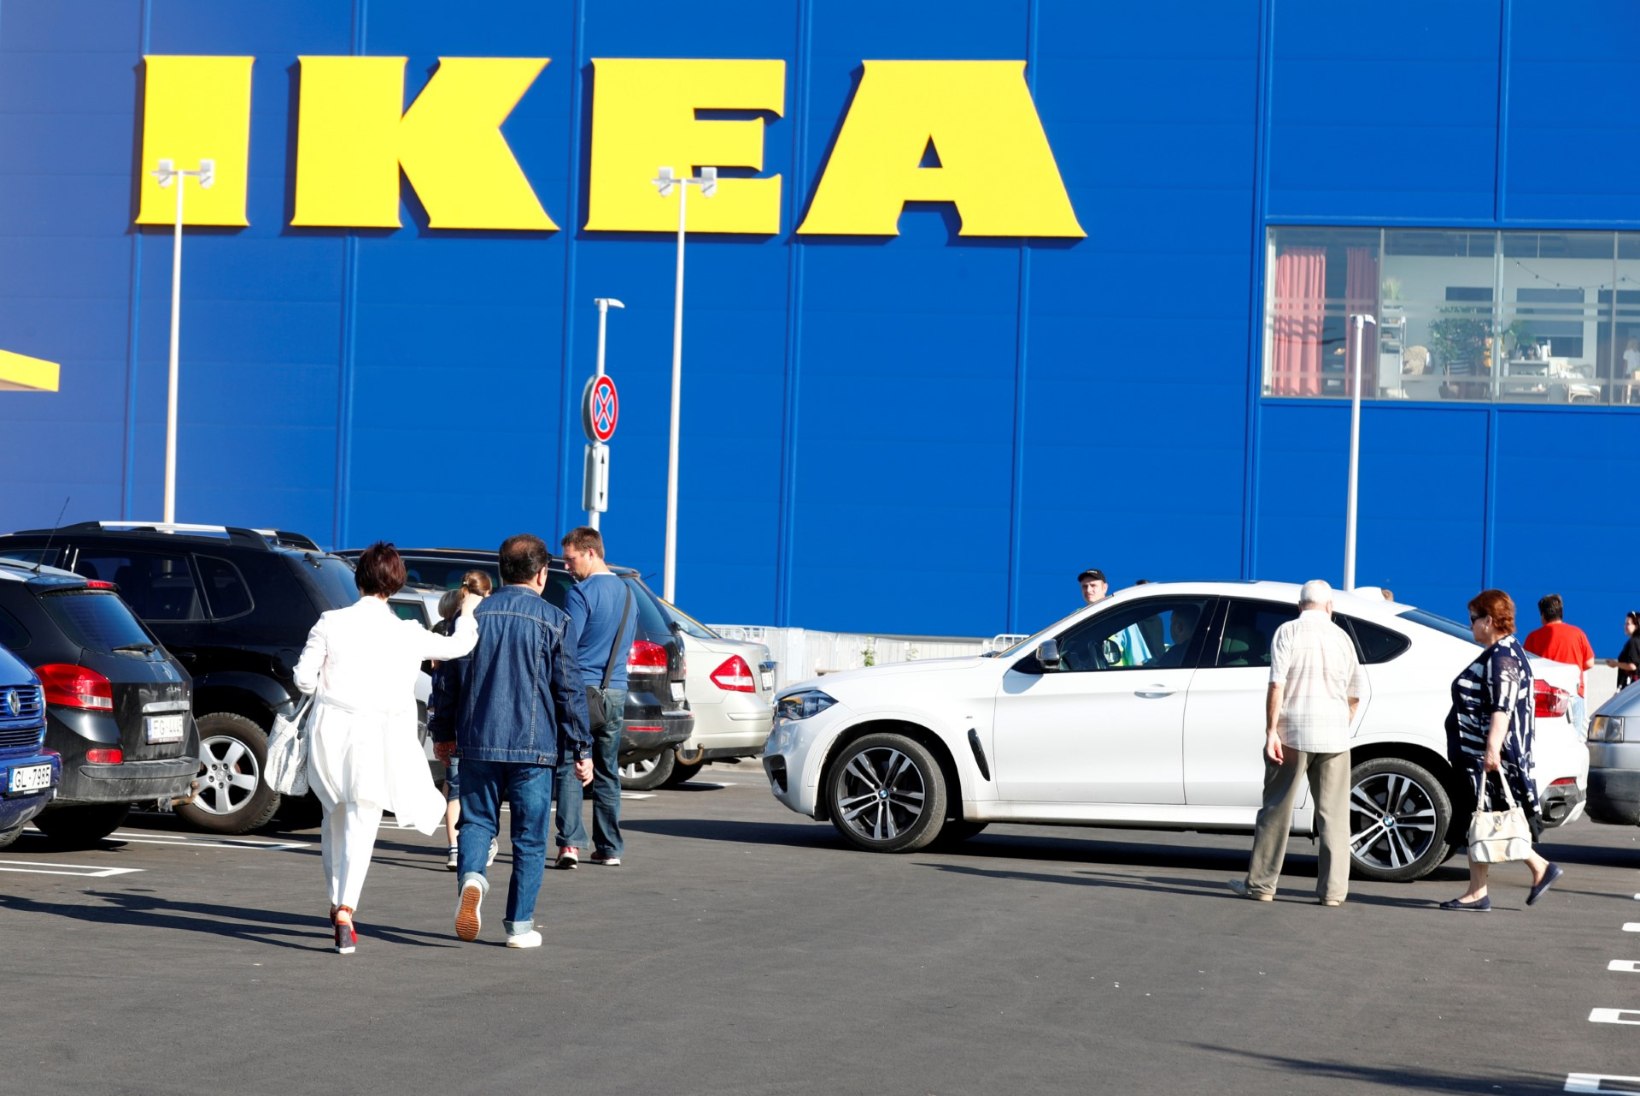 Sahinad: Tallinna külje alla võib peagi kerkida IKEA